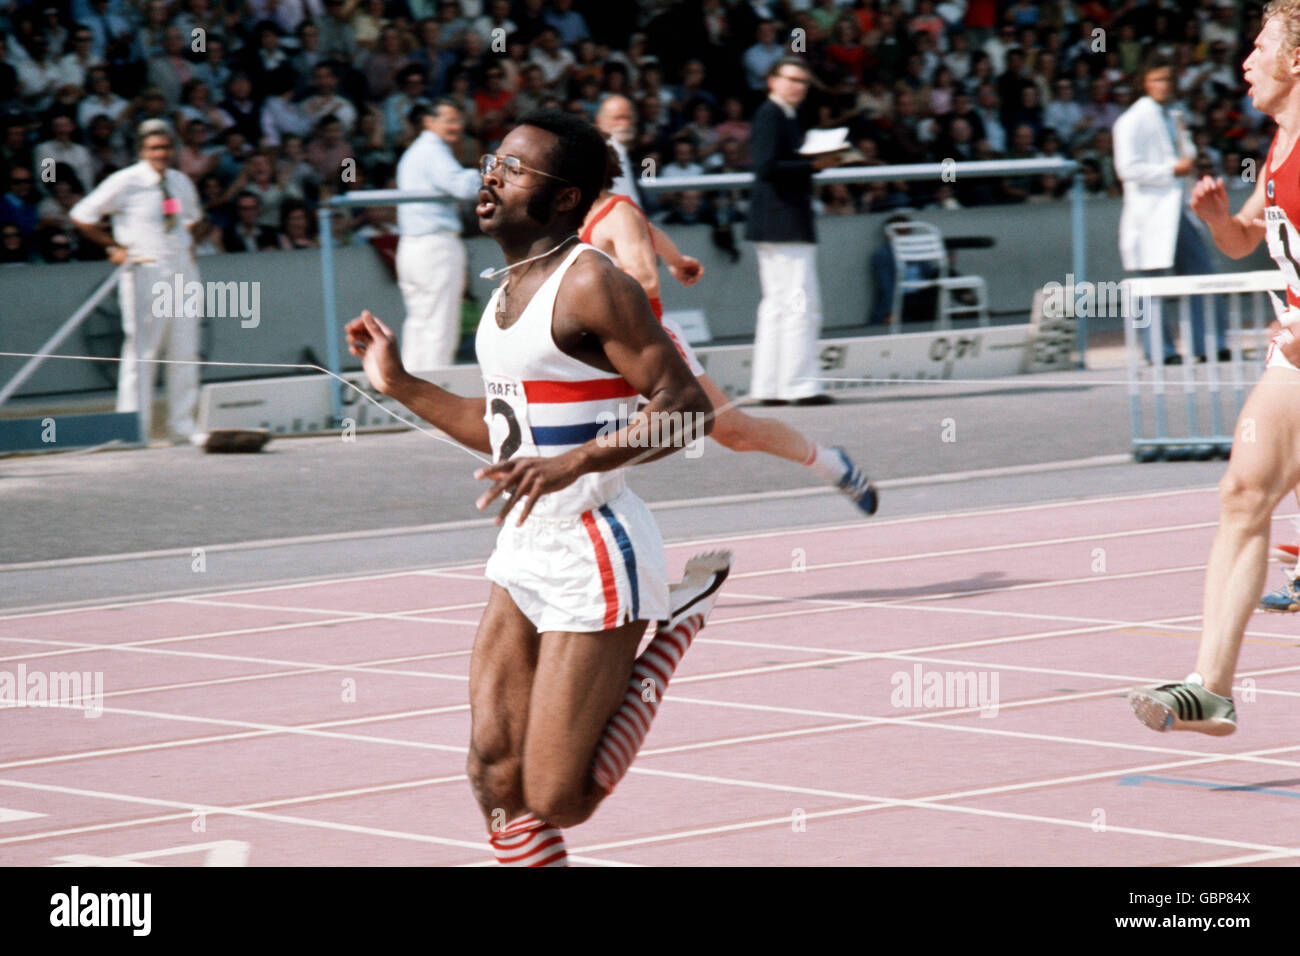 Atletica - Gran Bretagna / URSS. Ainsley Bennett della Gran Bretagna attraversa la linea per vincere i 200 m degli uomini Foto Stock